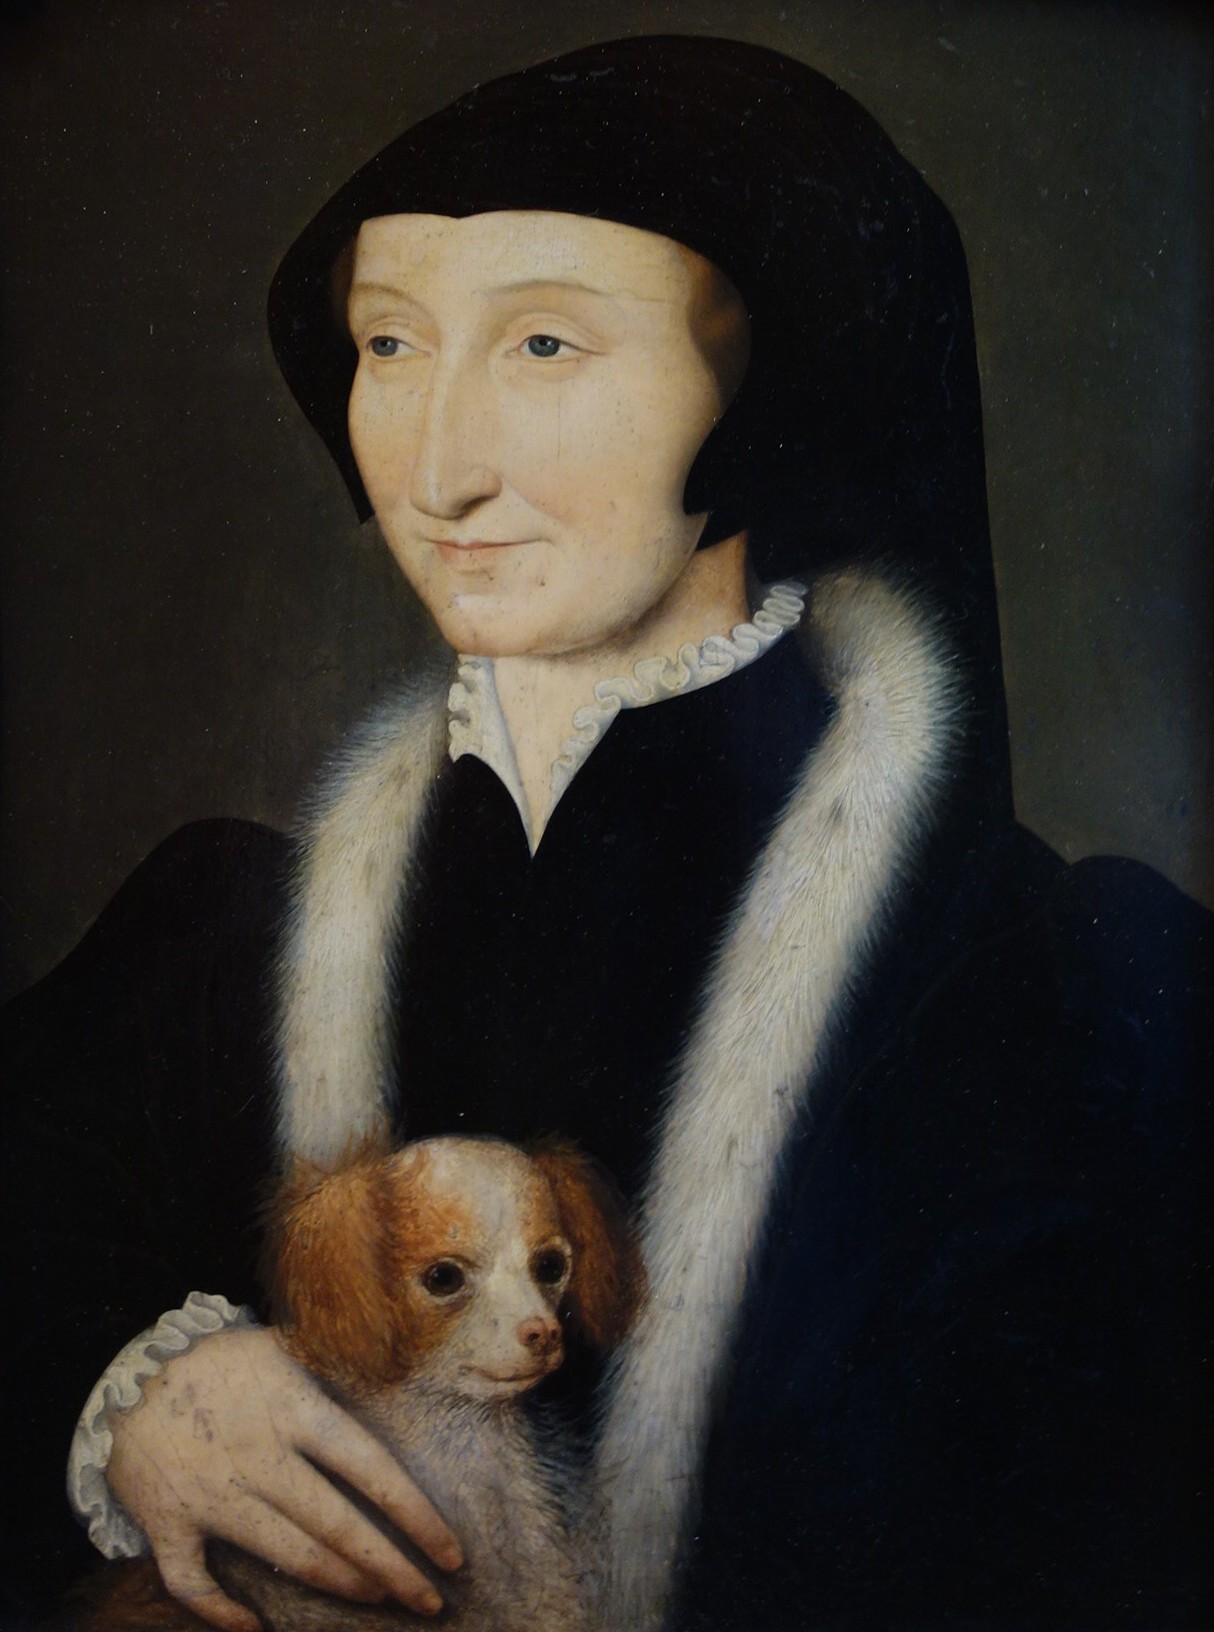 Une dame vêtue de noire, avec une coiffe ajustée noire, un col monté et des poignets en dentelle blanche, une encolure en fourrure blanche, tient un petit chien blanc et roux dans la main droite.